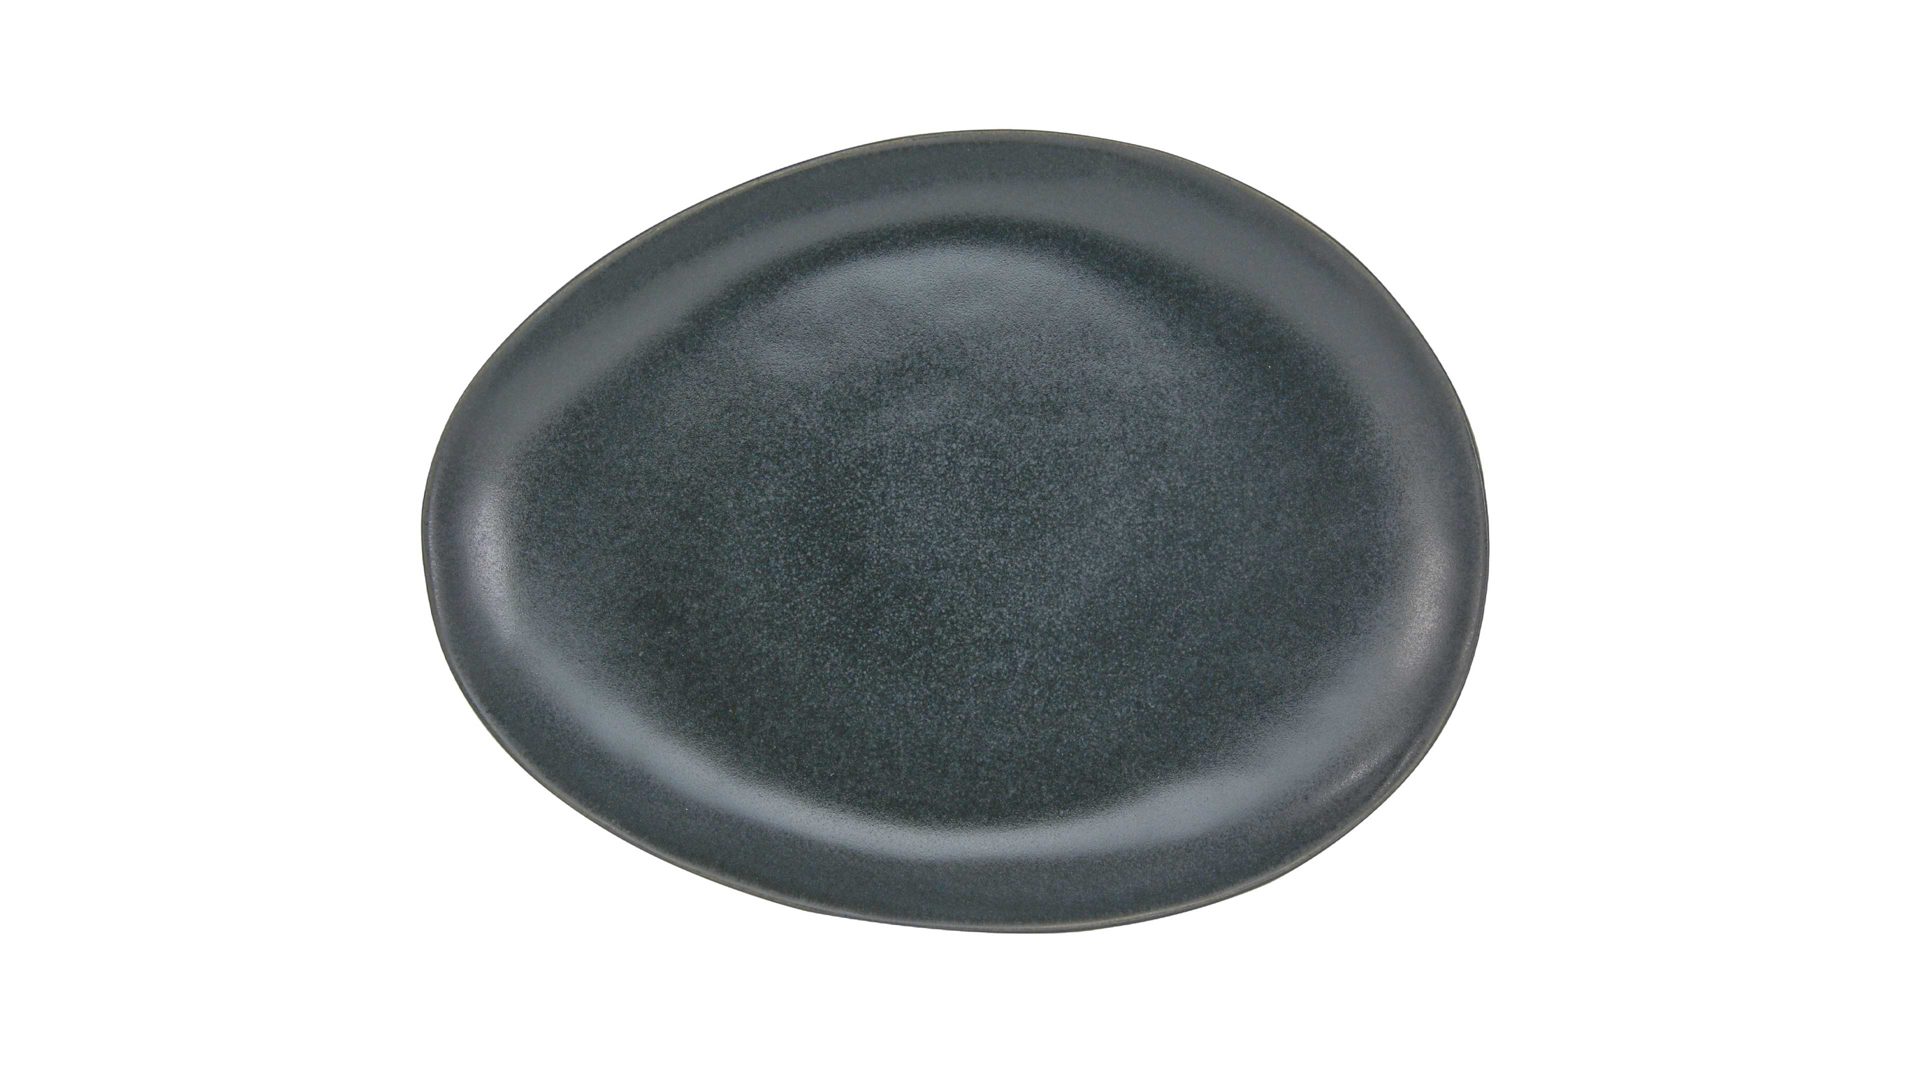 Essteller Creatable aus Steinzeug in Schwarz CREATABLE Pietra – Speiseteller schwarzes Steinzeug – ca. 27 x 20 cm